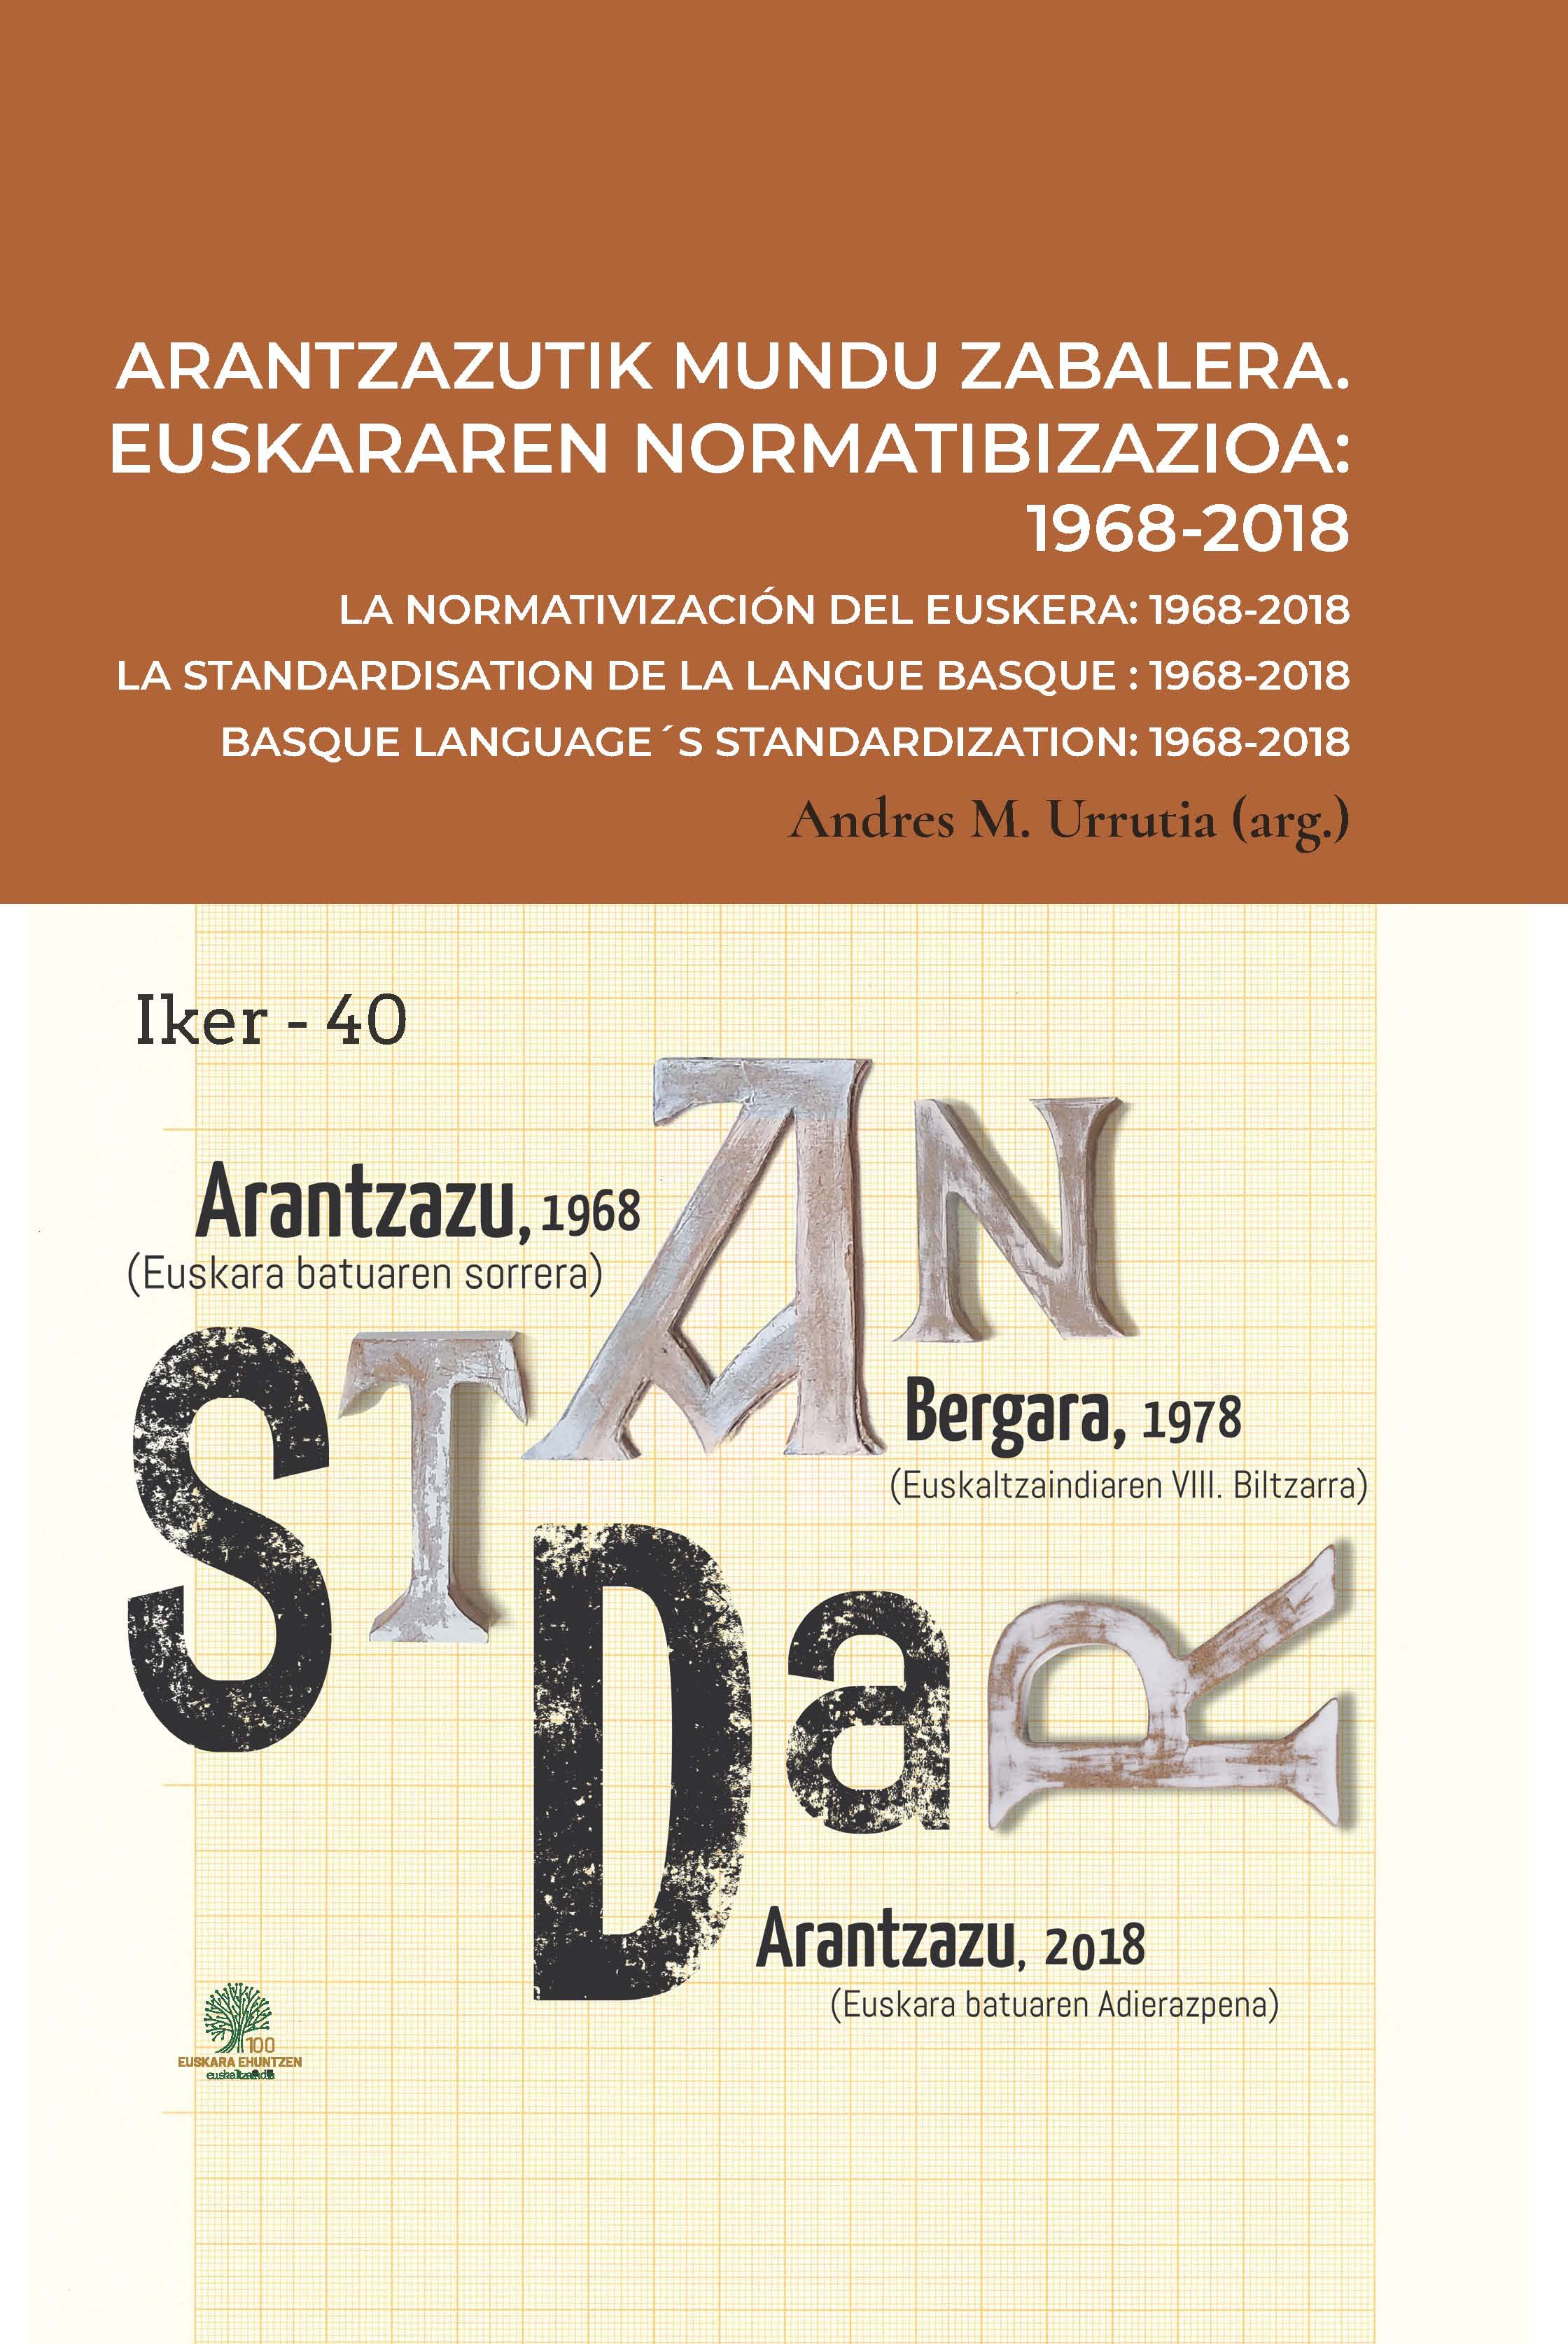 Imagen de portada del libro Arantzazutik mundu zabalera